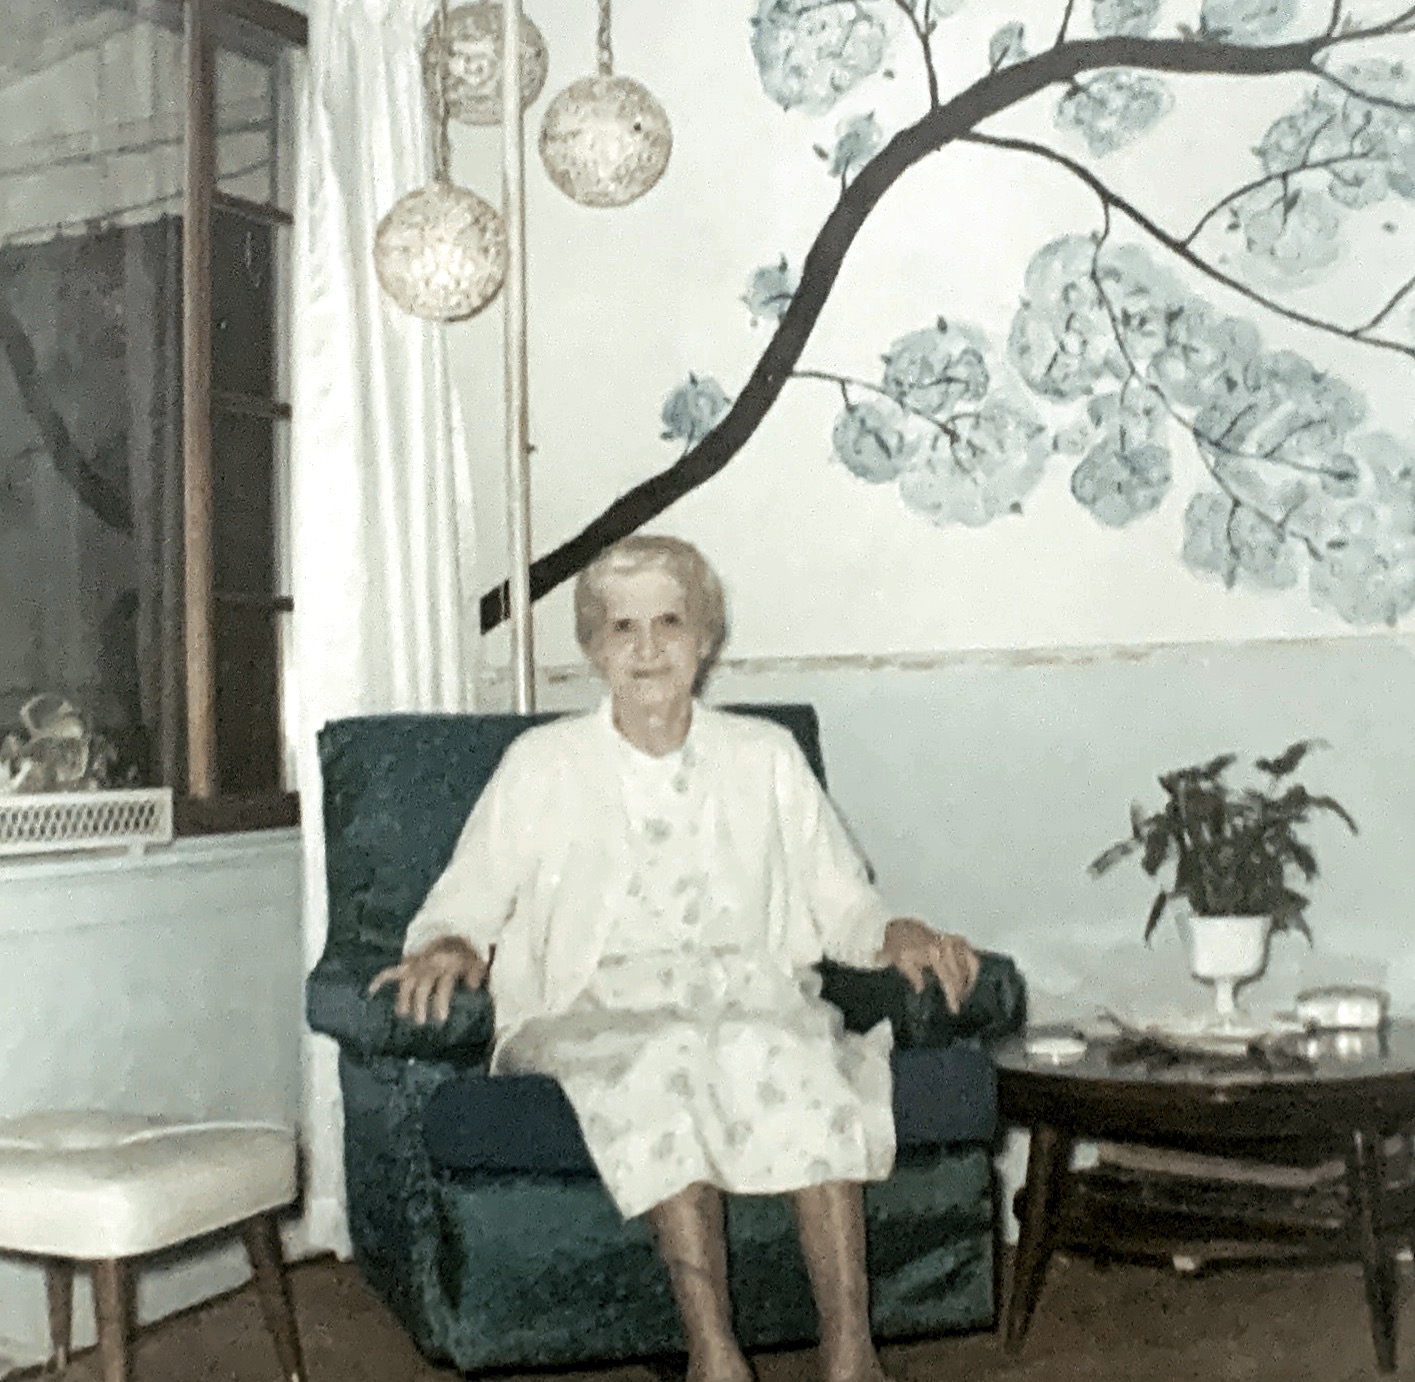 1966 - Grandma (75 years)